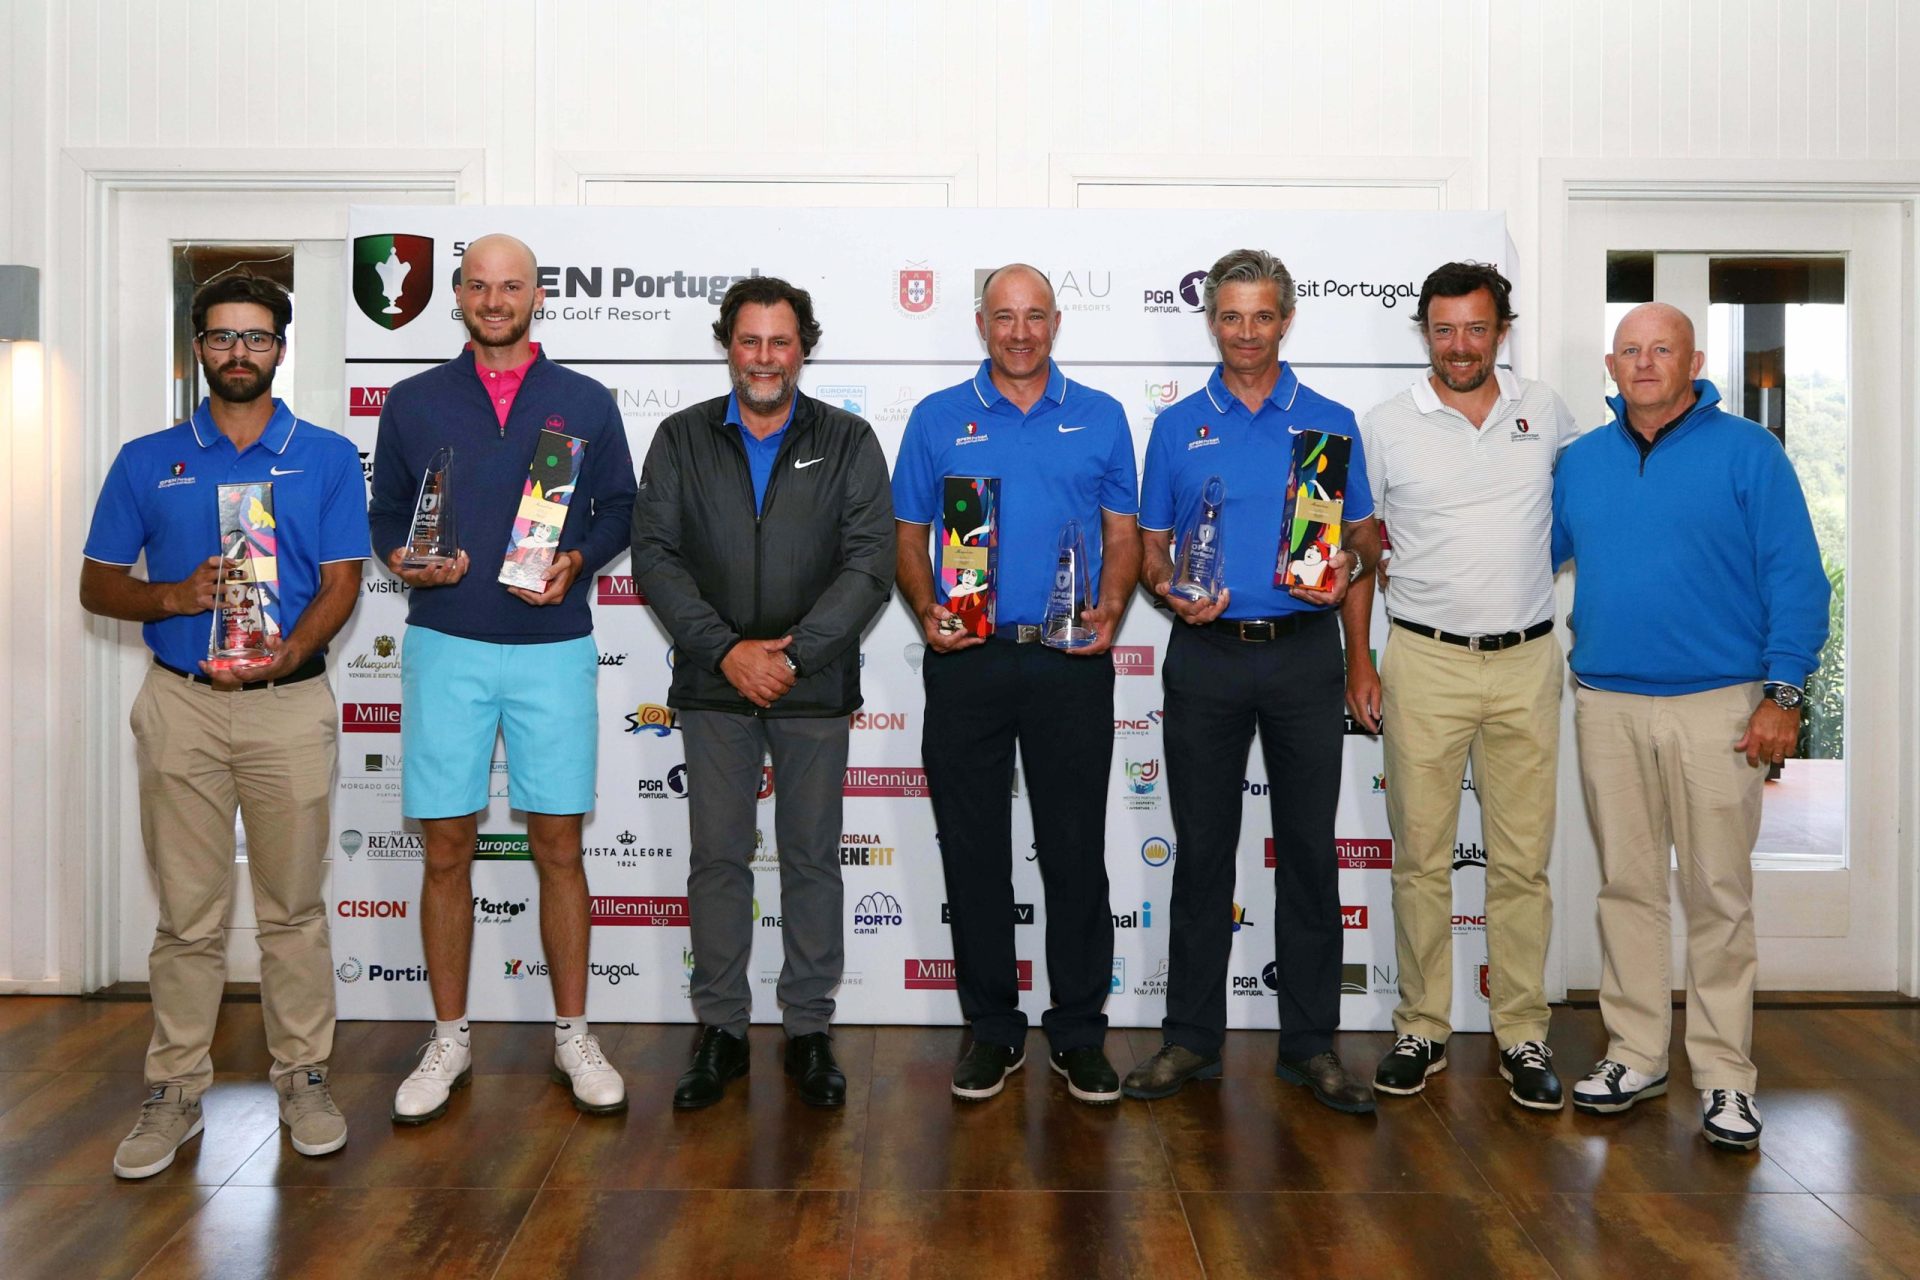 56.º Open de Portugal @ Morgado Golf Resort. Campeões de Espanha e China encabeçam lista de inscritos com recorde de 13 portugueses